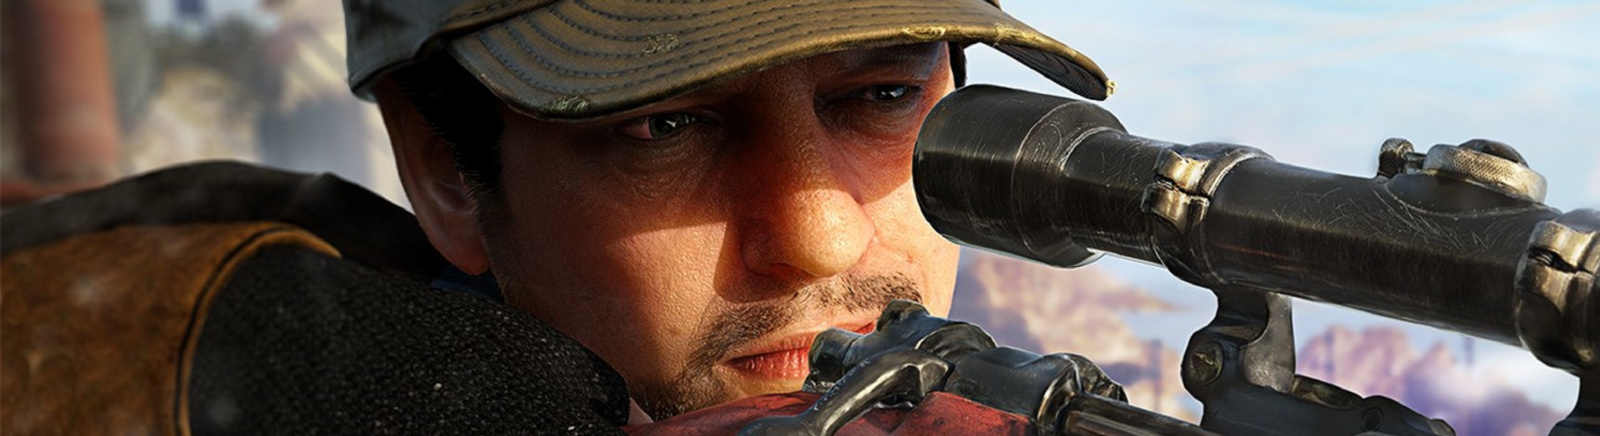 Дата выхода Sniper Elite VR  на PC и PS4 в России и во всем мире